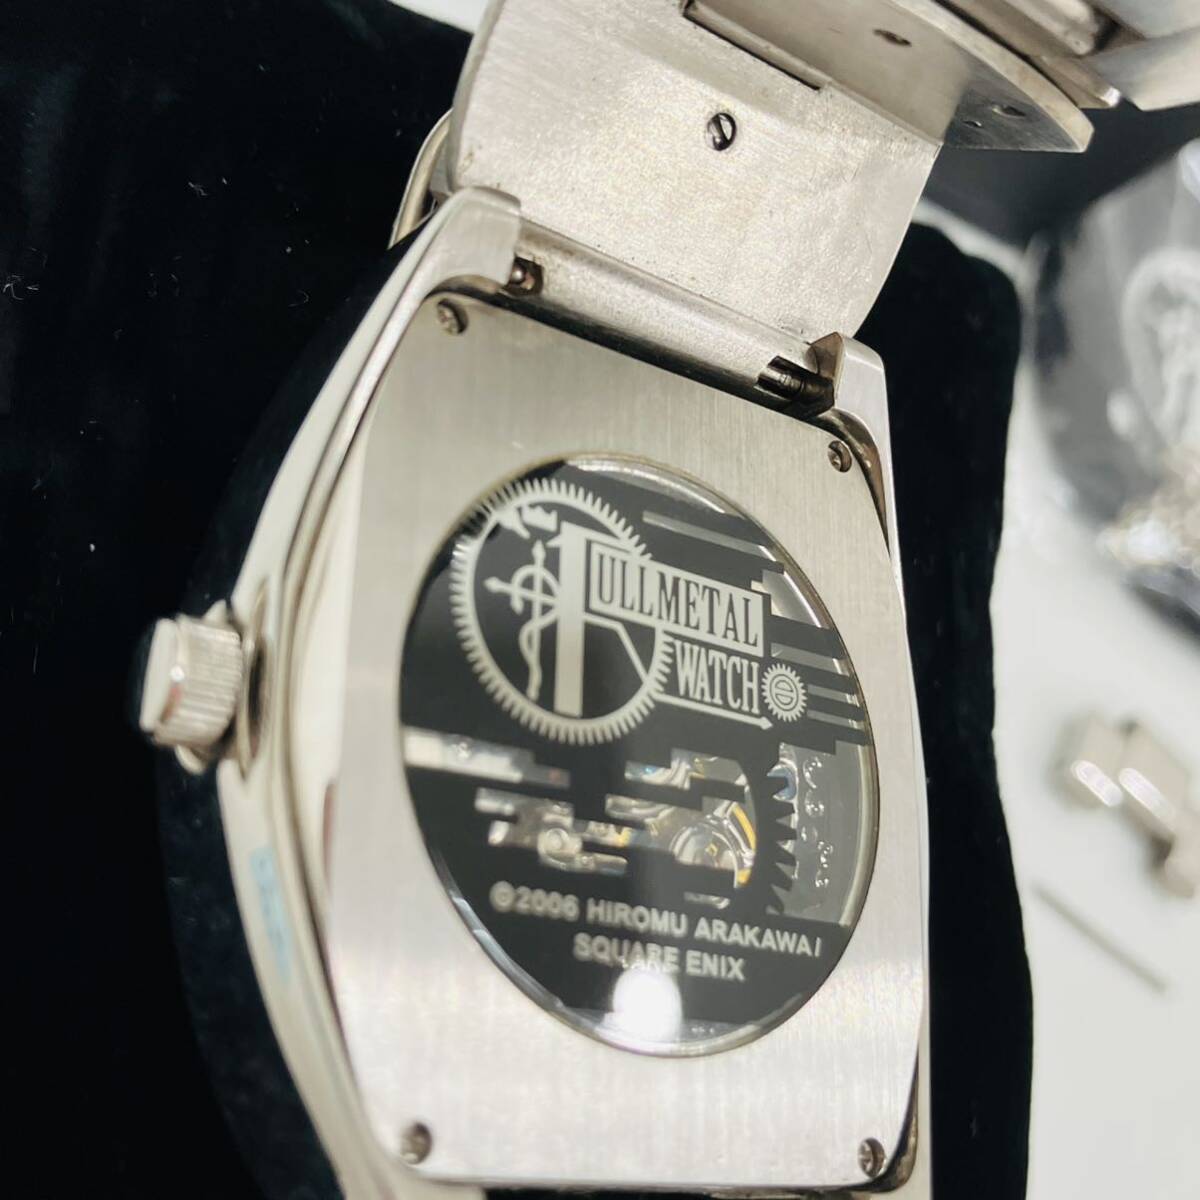 【現状販売品:可動】腕時計 時計 鋼の錬金術師 FULLMETAL ALCHEMIST FULLMETALWATCH HIROMU ARAKAWA_画像10